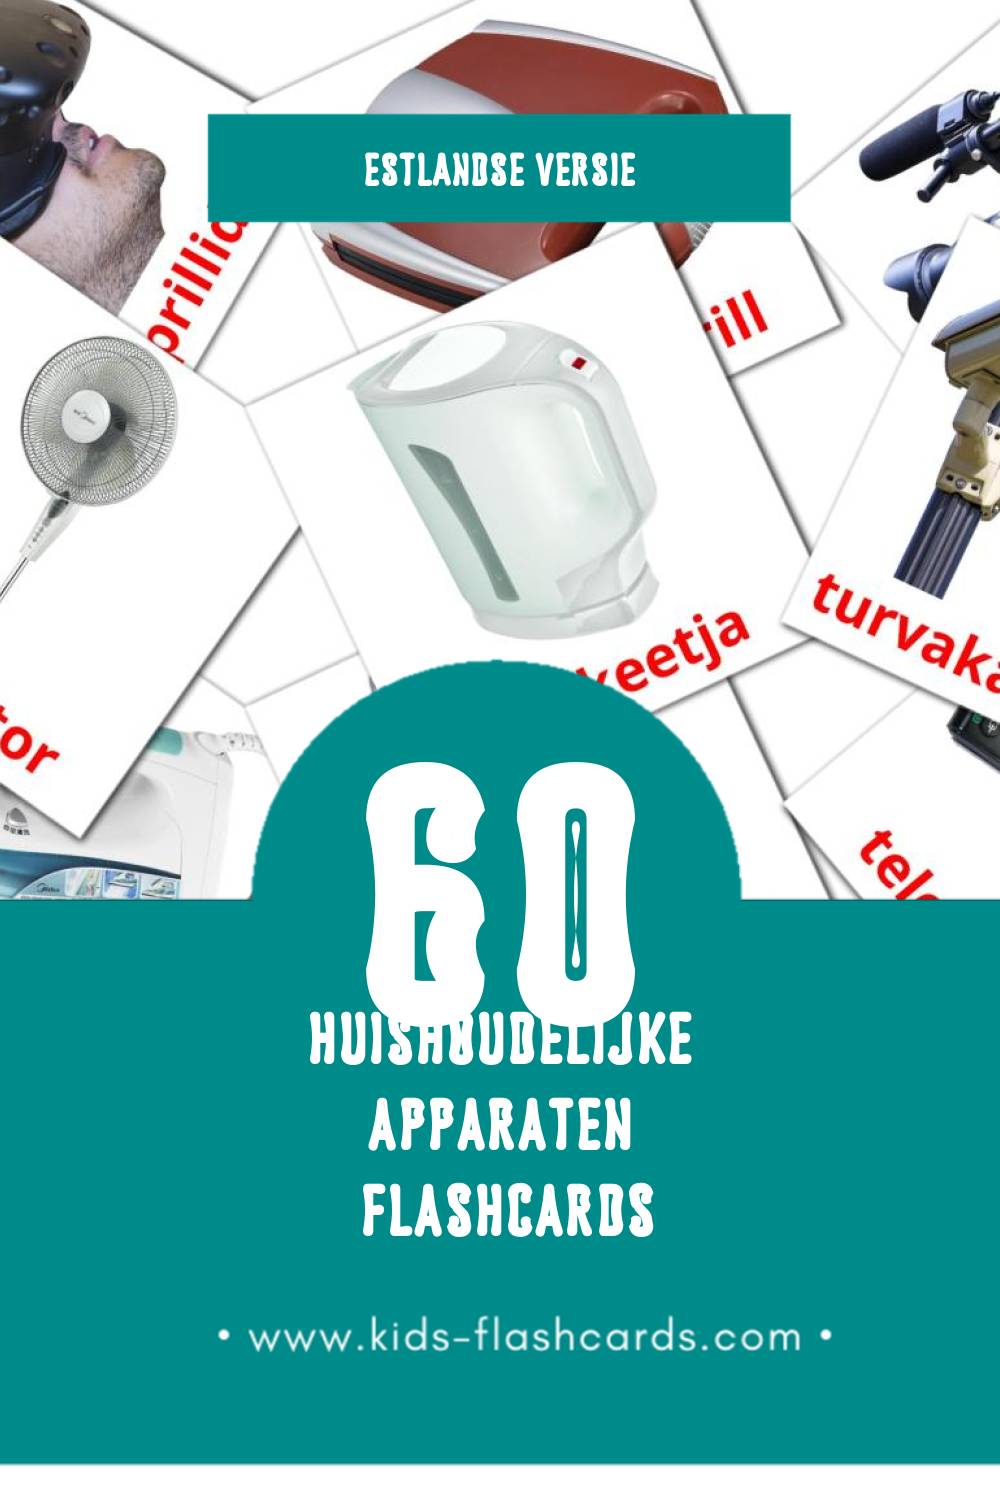 Visuele Kodutehnika Flashcards voor Kleuters (60 kaarten in het Estlands)